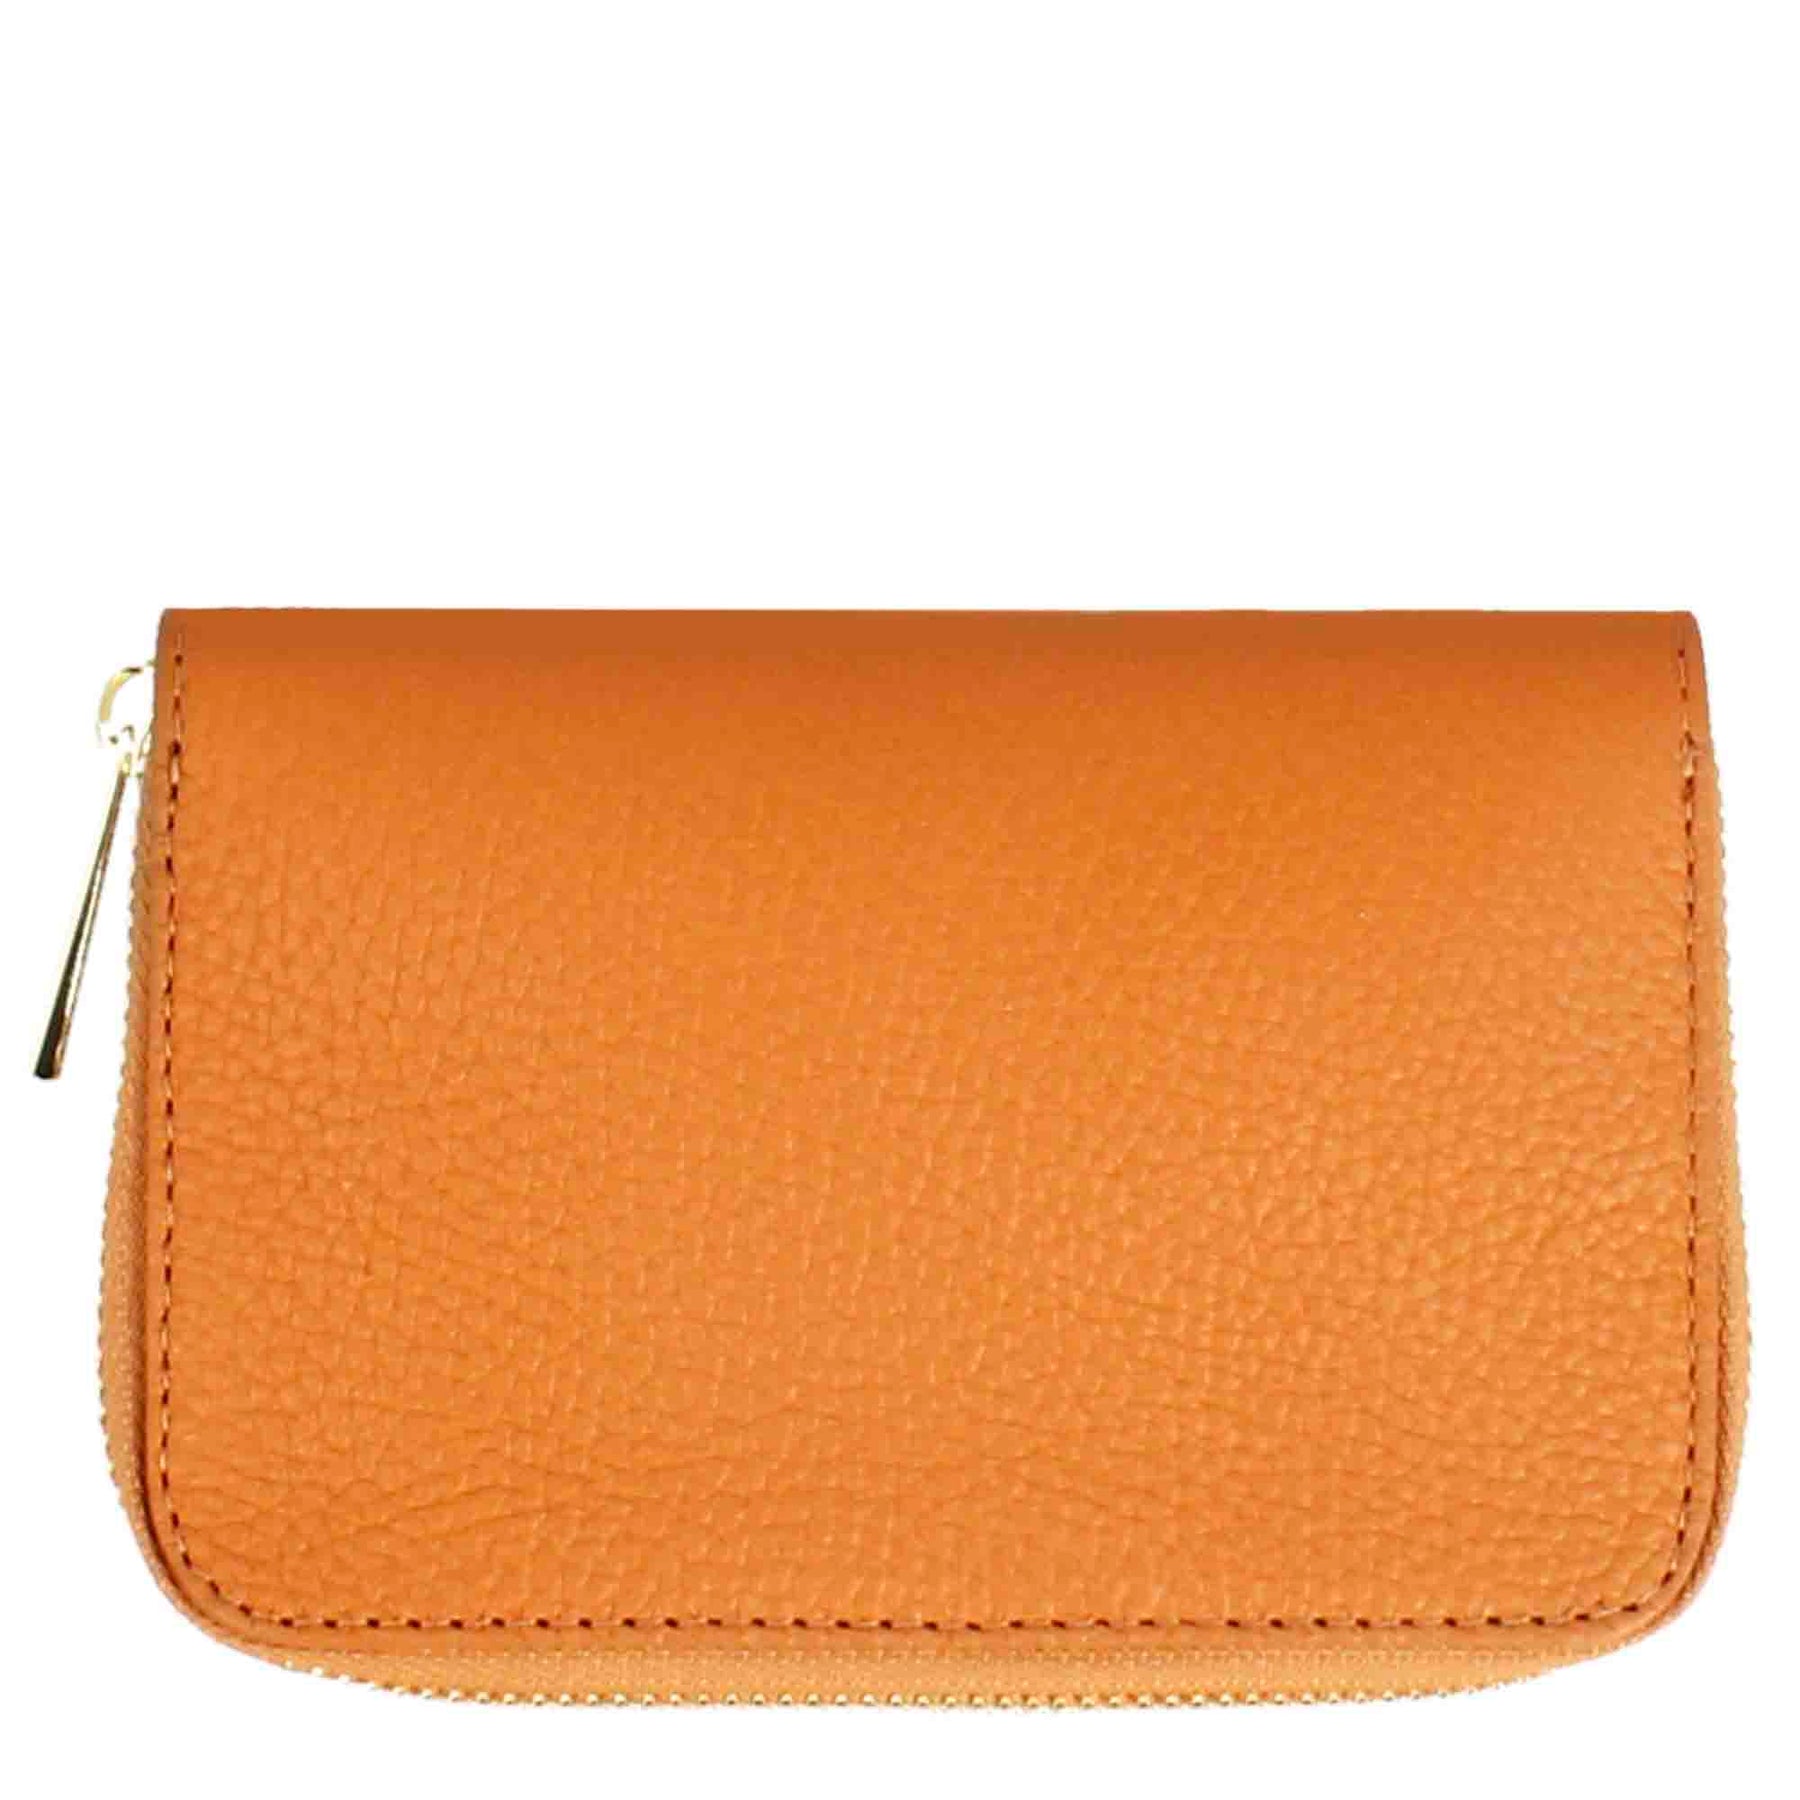 Women's medium wallet in leather with zip